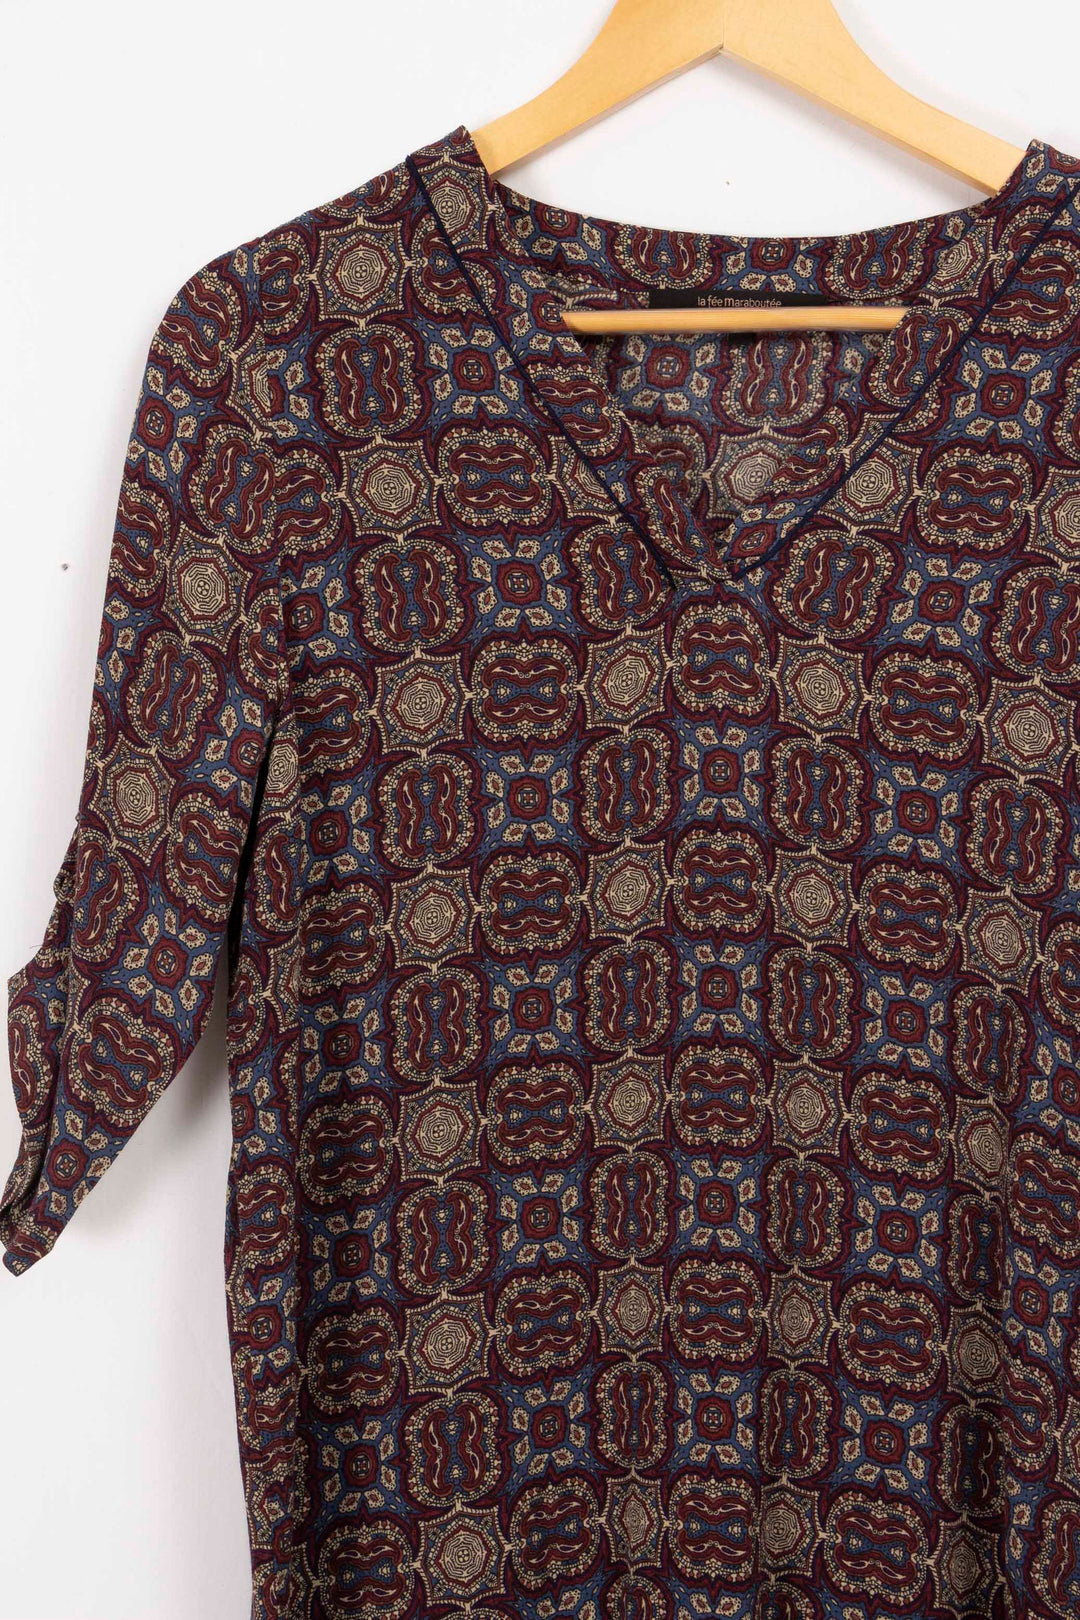 La Fée Maraboutée patterned blouse - 36